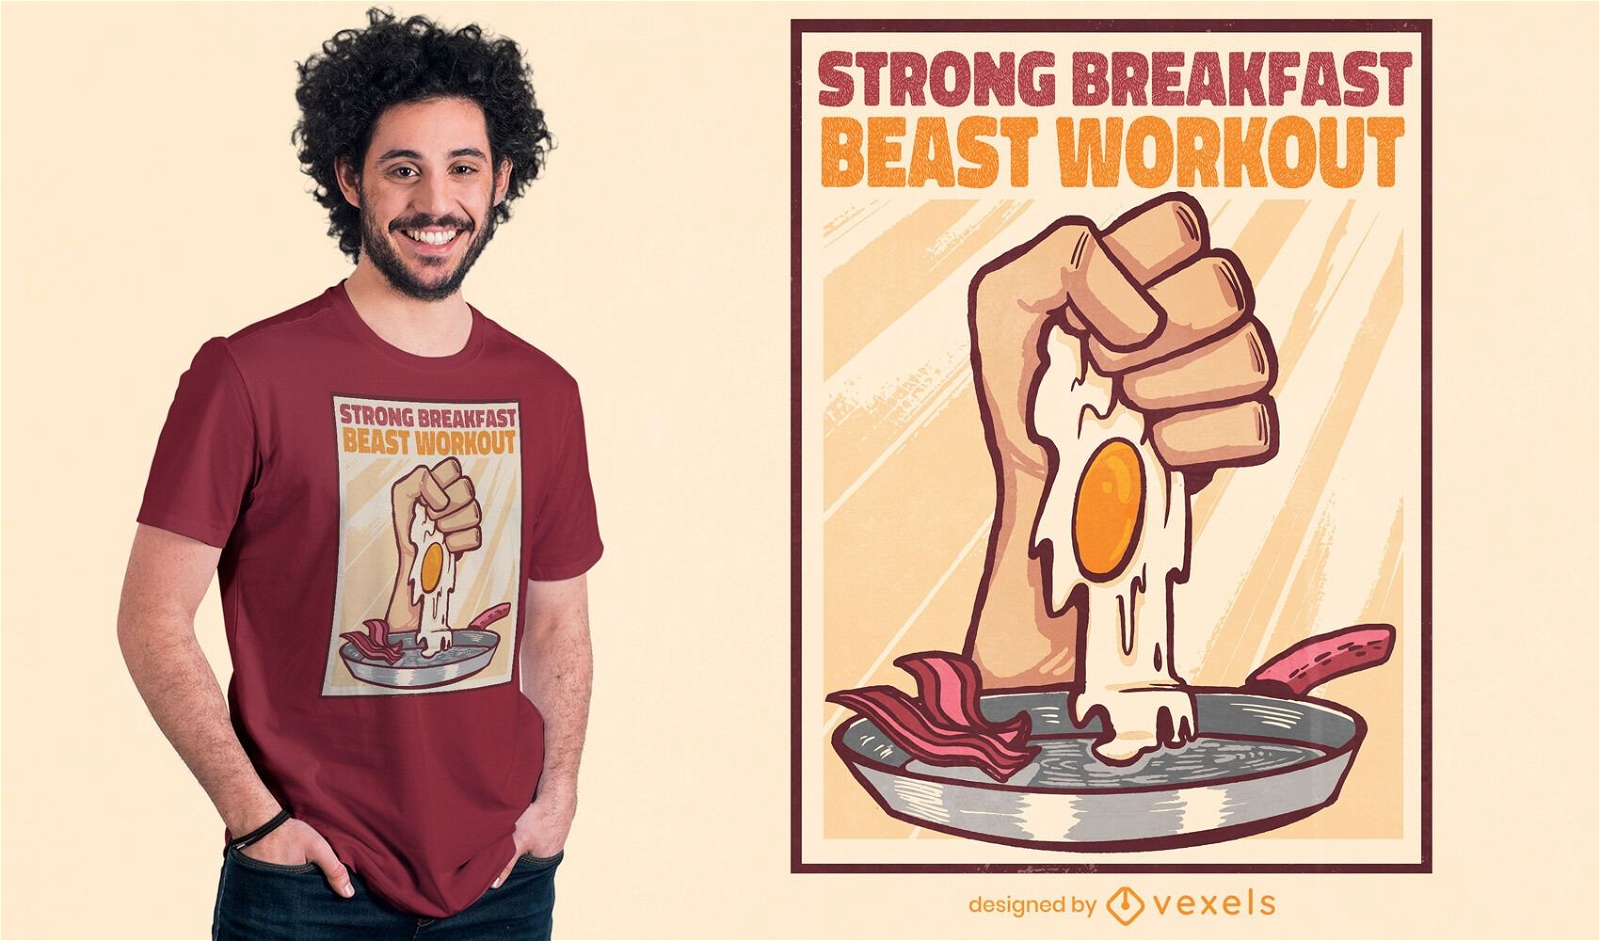 Beast workout t-shirt design